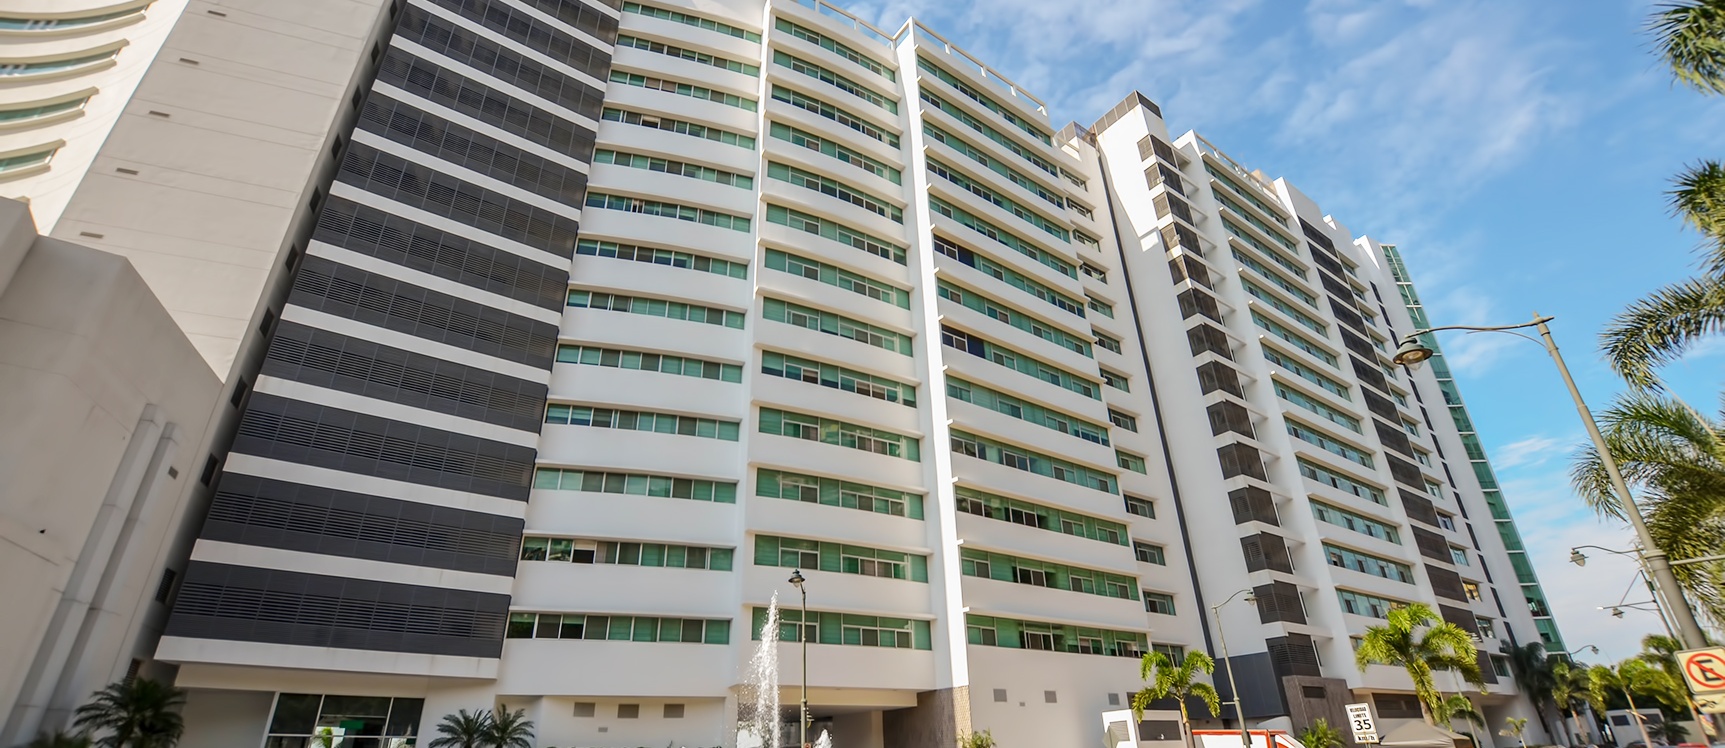 GeoBienes - Departamento en venta en Riverfront 2 sector centro de Guayaquil - Plusvalia Guayaquil Casas de venta y alquiler Inmobiliaria Ecuador